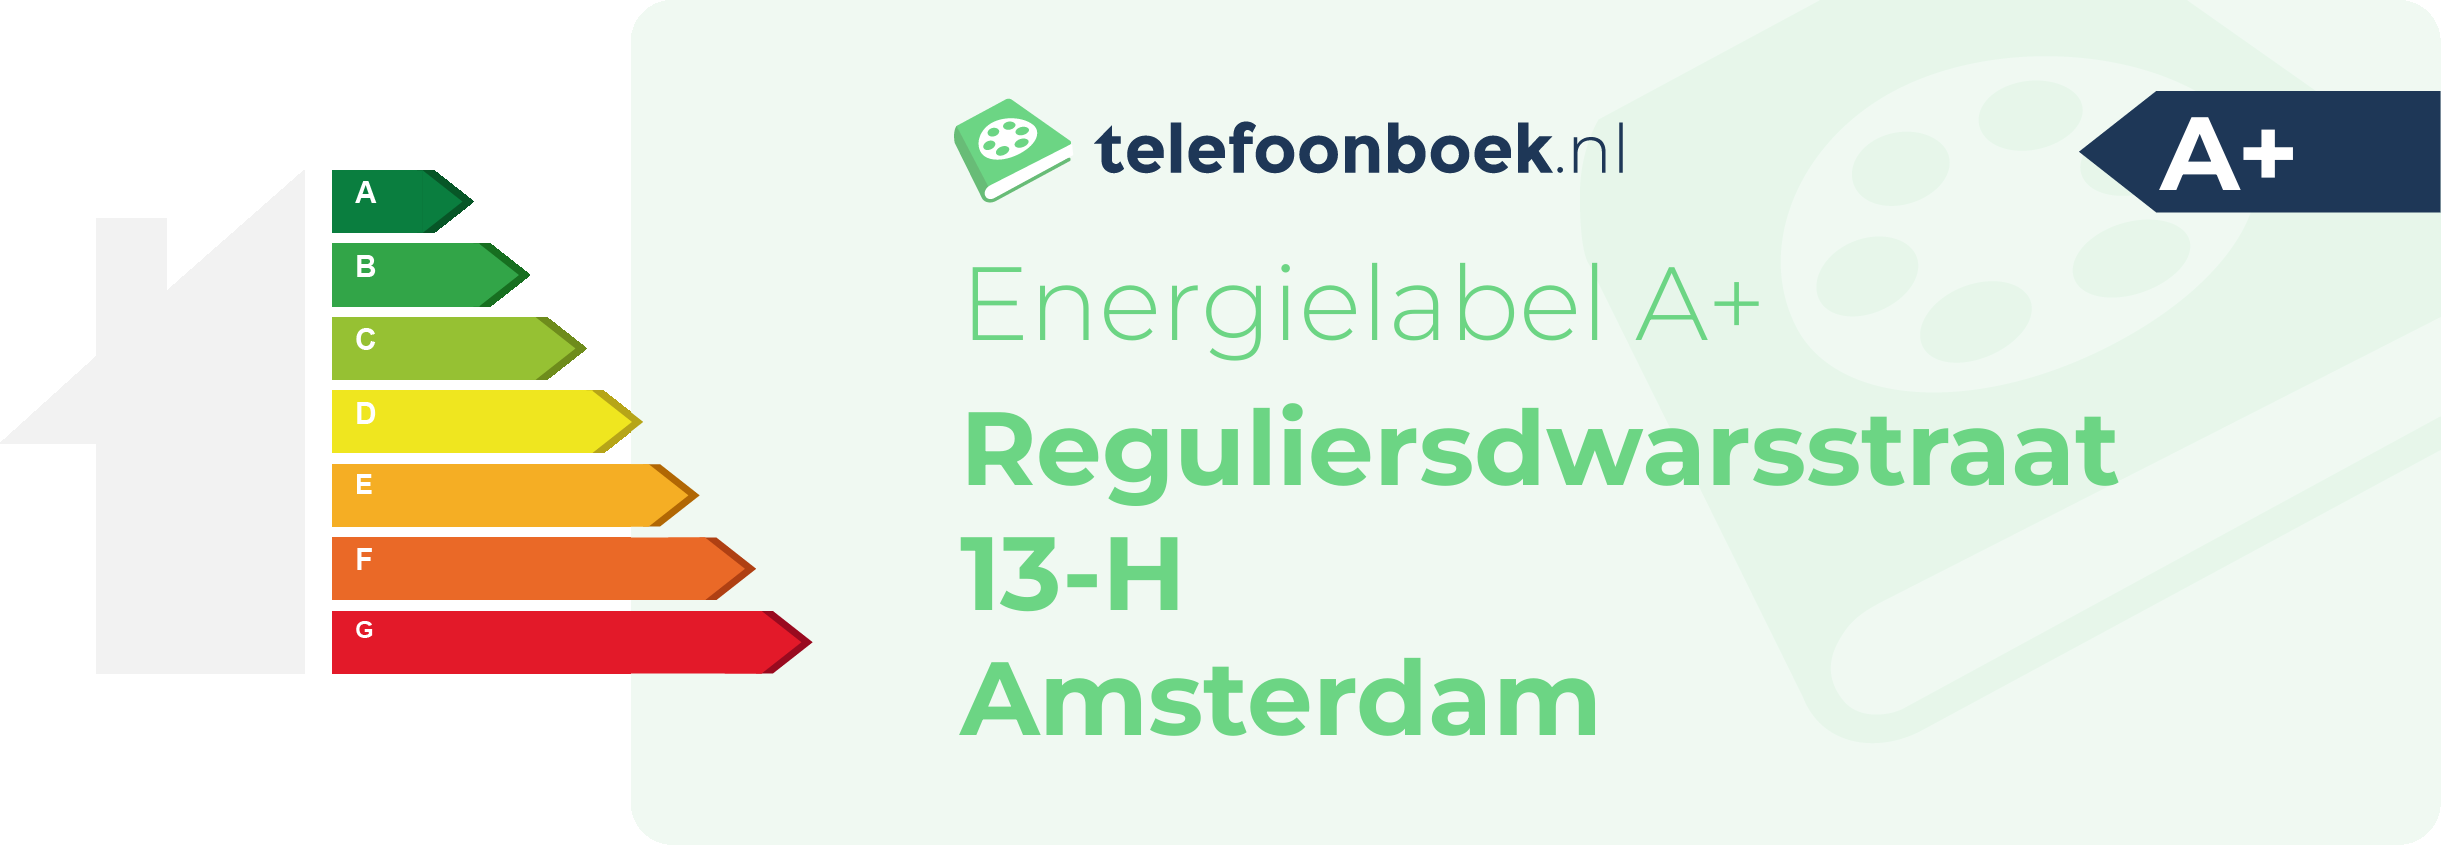 Energielabel Reguliersdwarsstraat 13-H Amsterdam